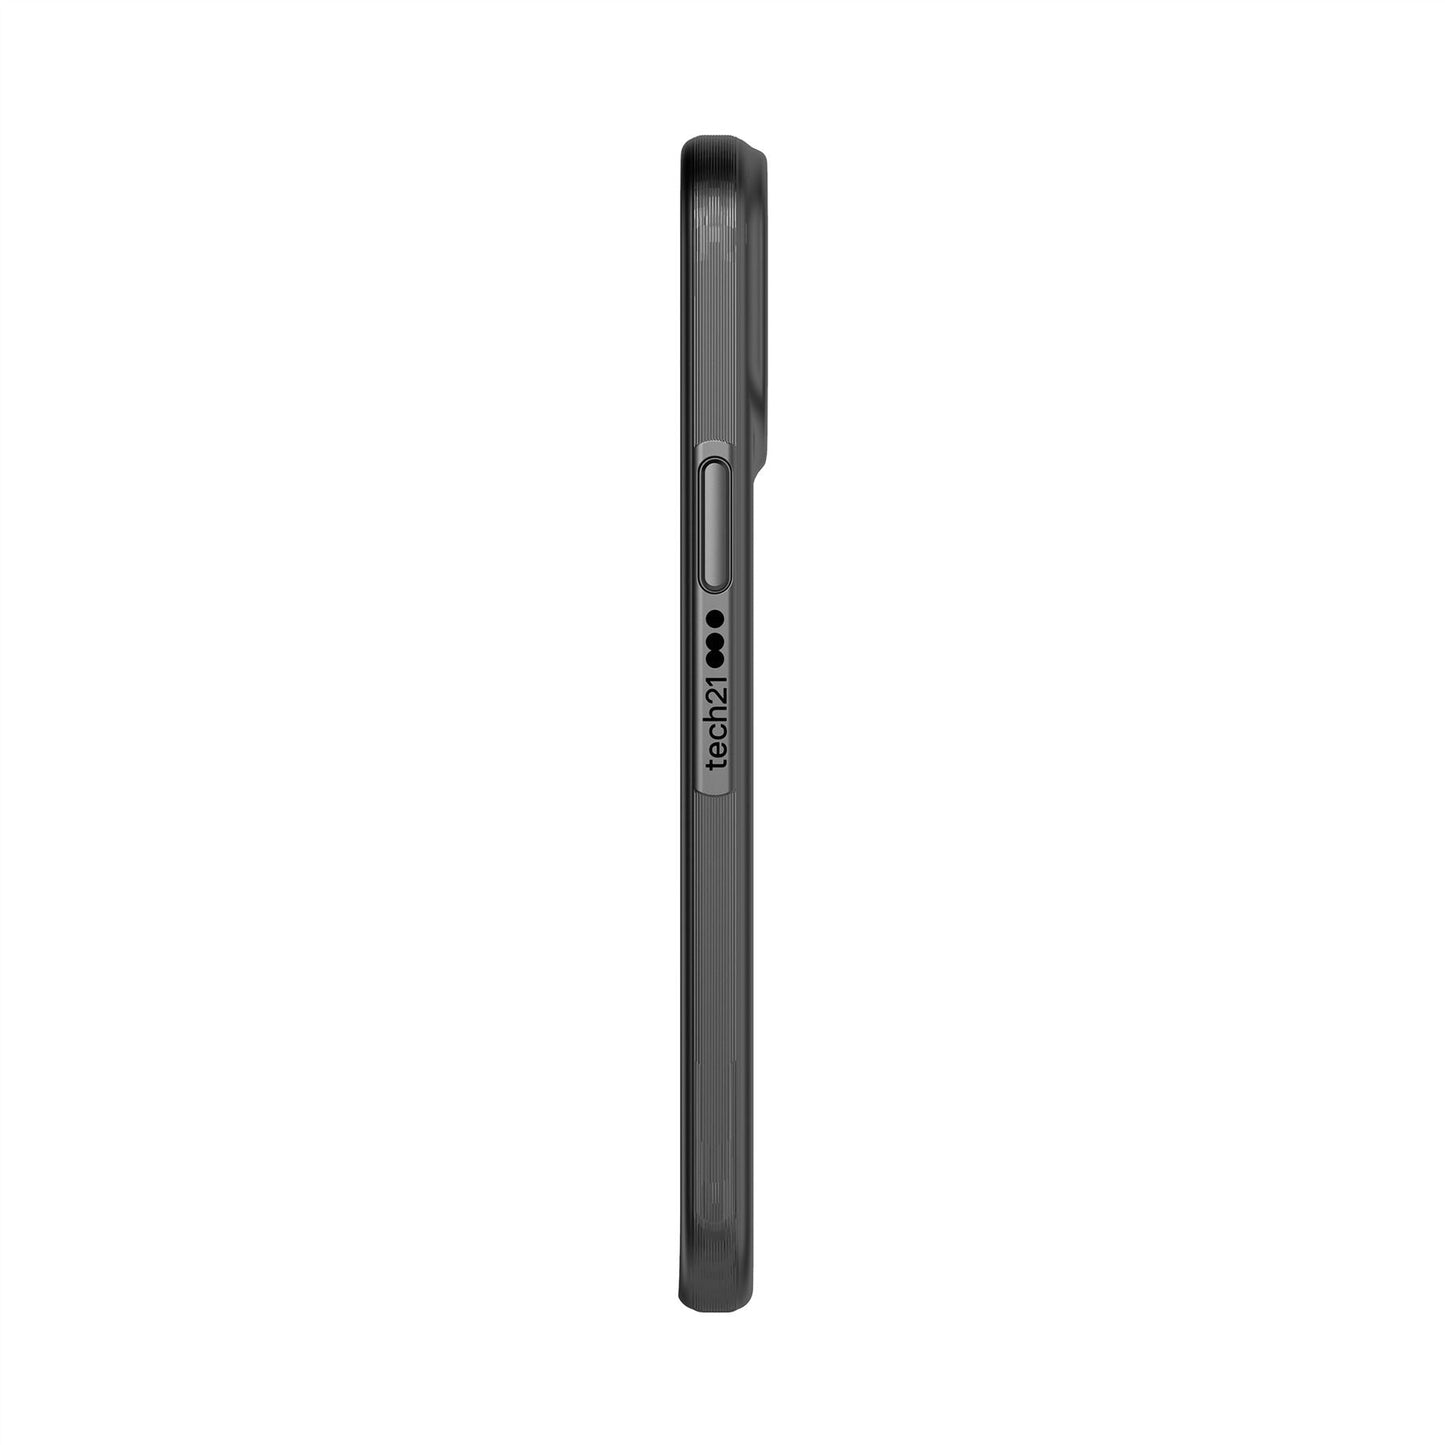 Evo Slim Black iPhone 12 Pro Max Case